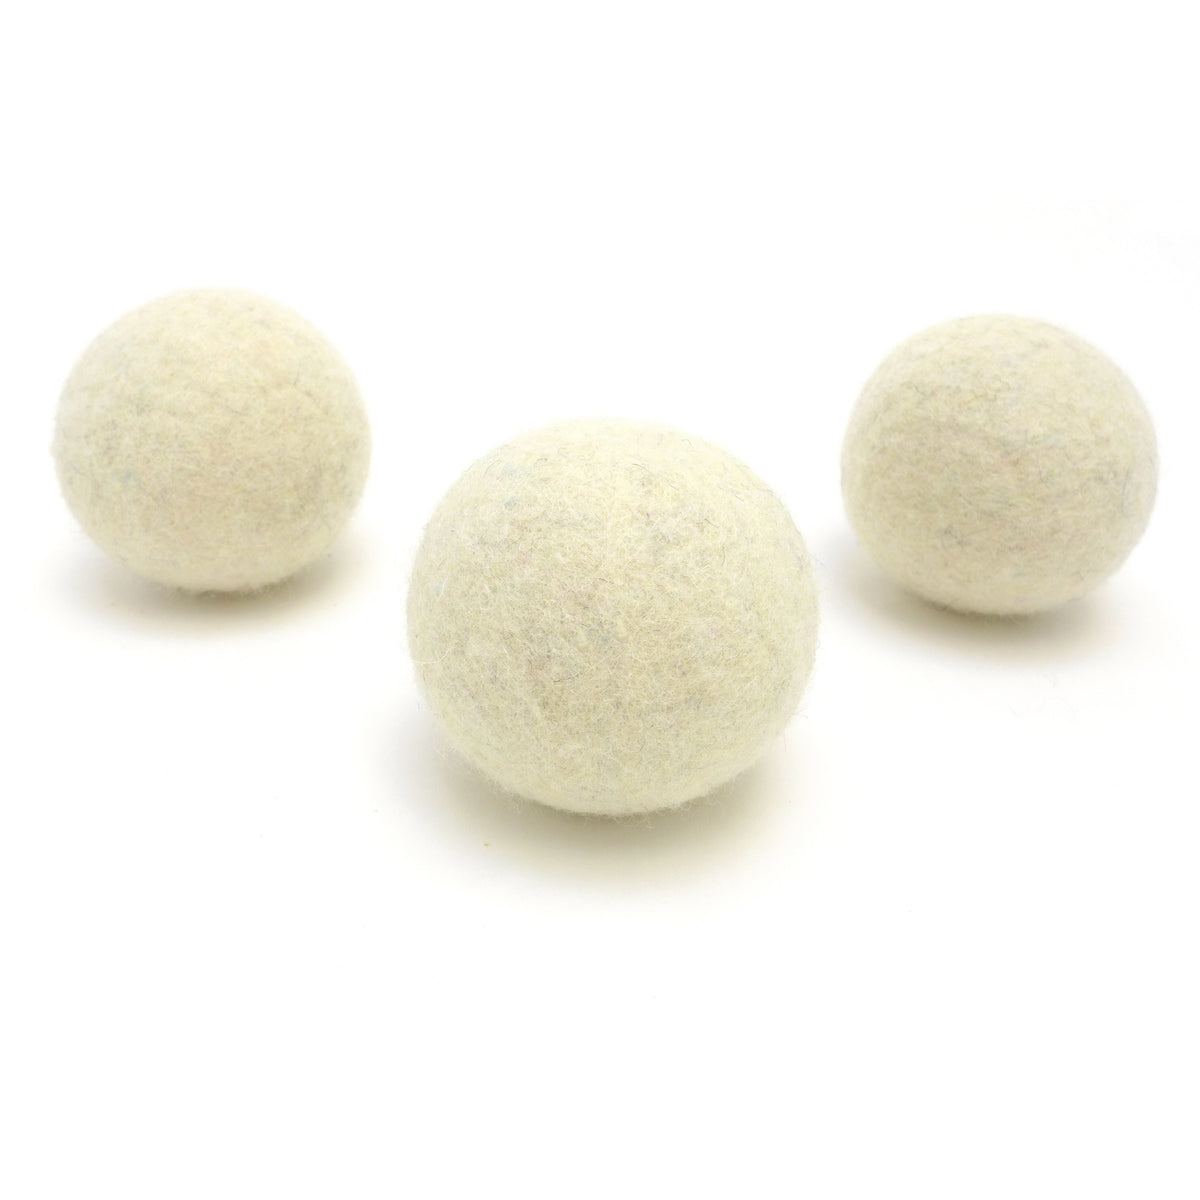 LooHoo Wool Dryer Balls - 3-Pack